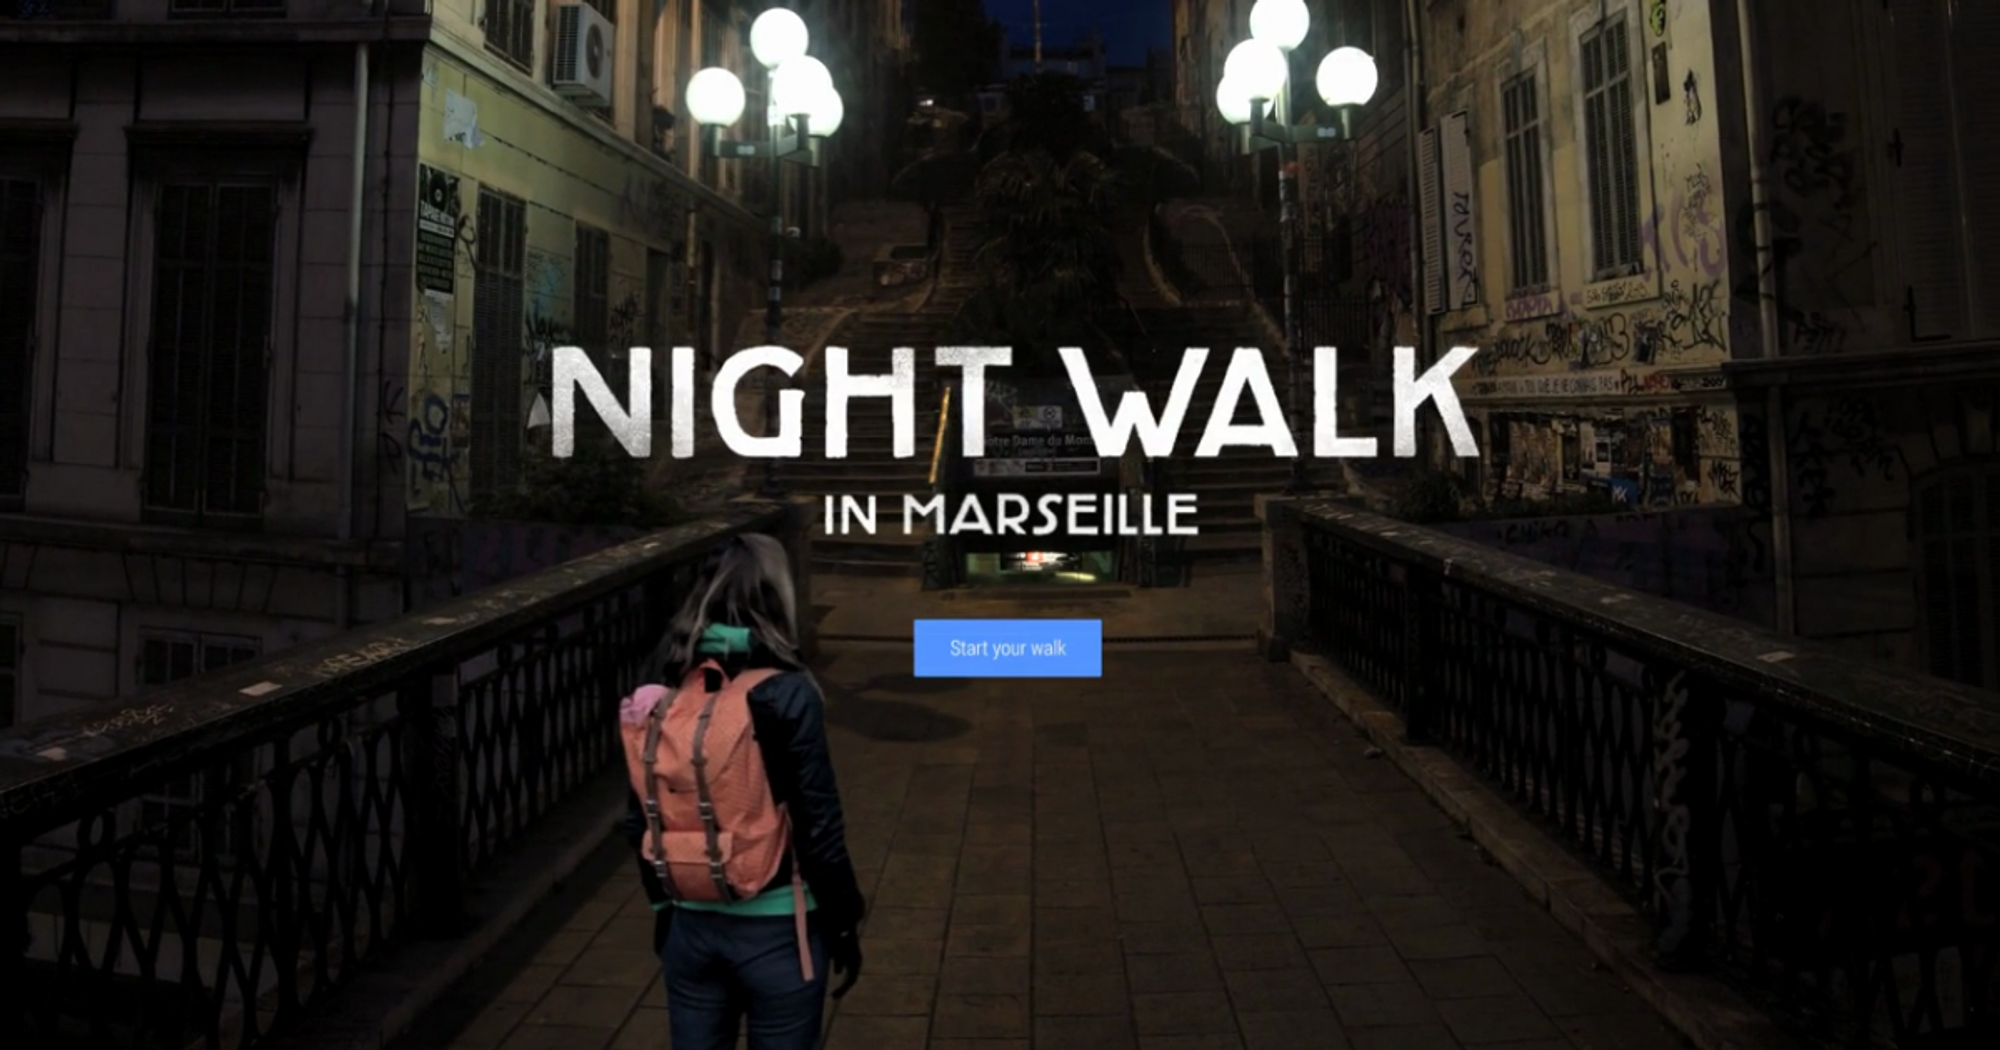 Night Walk in Marseille